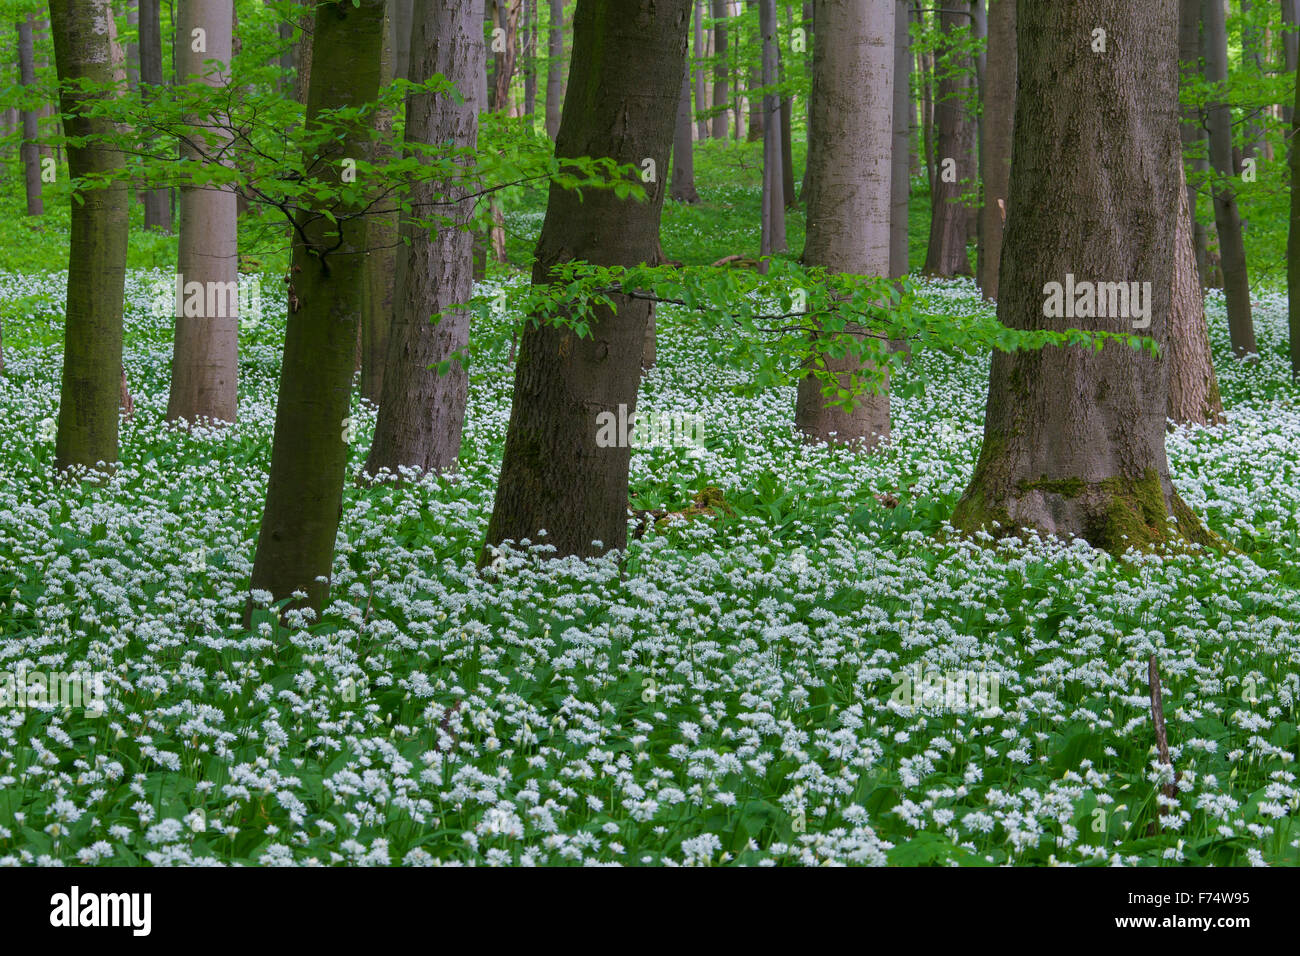 Holz-Knoblauch / Bärlauch / Bärlauch (Allium Ursinum) Blüte in Buchenwald im Frühjahr, Nationalpark Hainich, Deutschland Stockfoto